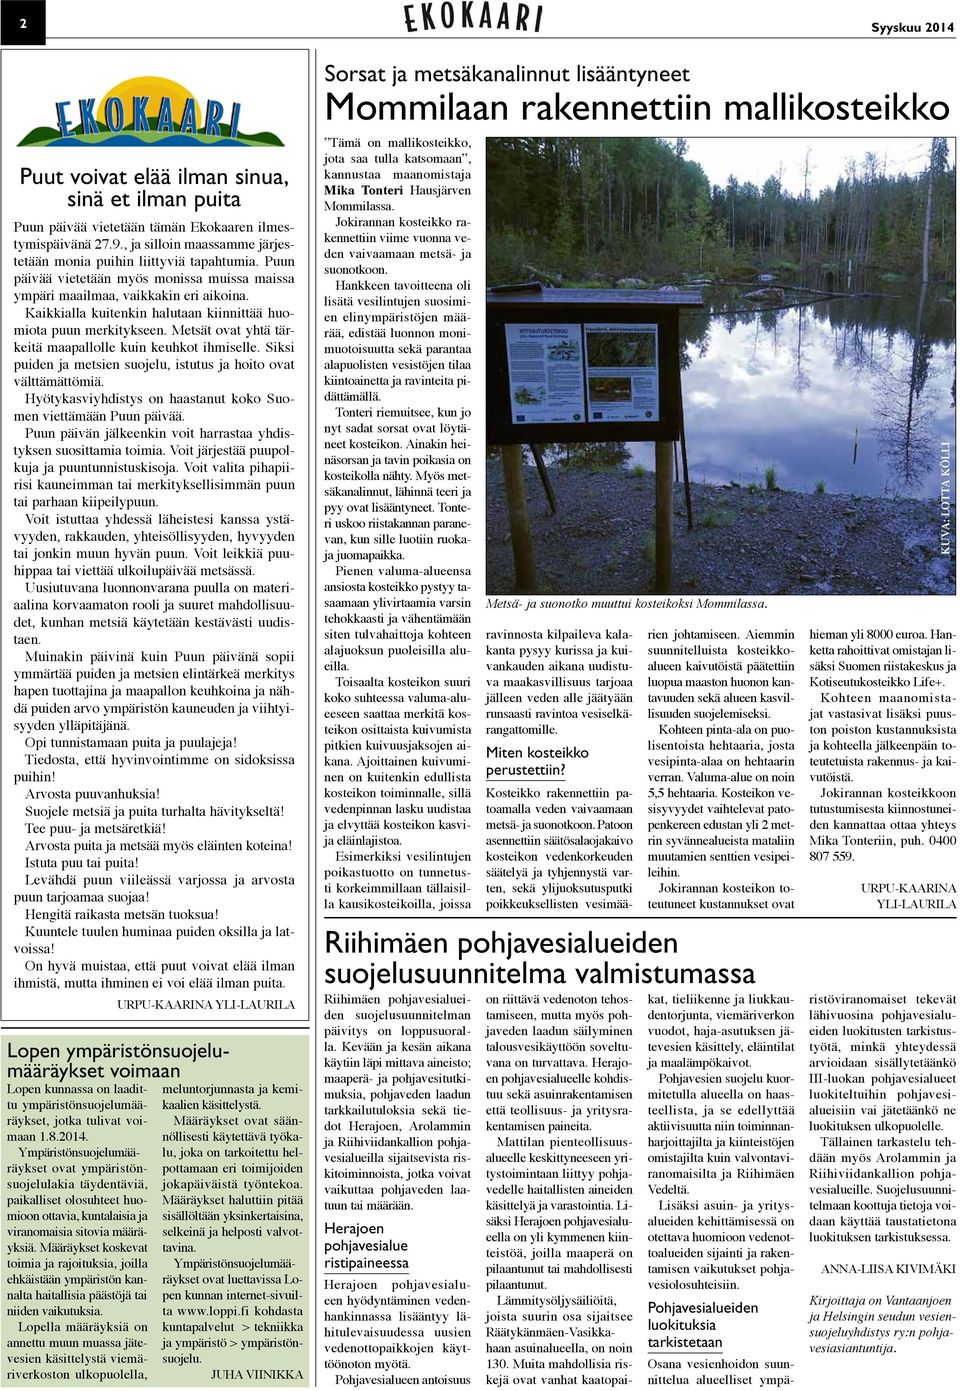 Metsät ovat yhtä tärkeitä maapallolle kuin keuhkot ihmiselle. Siksi puiden ja metsien suojelu, istutus ja hoito ovat välttämättömiä. Hyötykasviyhdistys on haastanut koko Suomen viettämään Puun päivää.